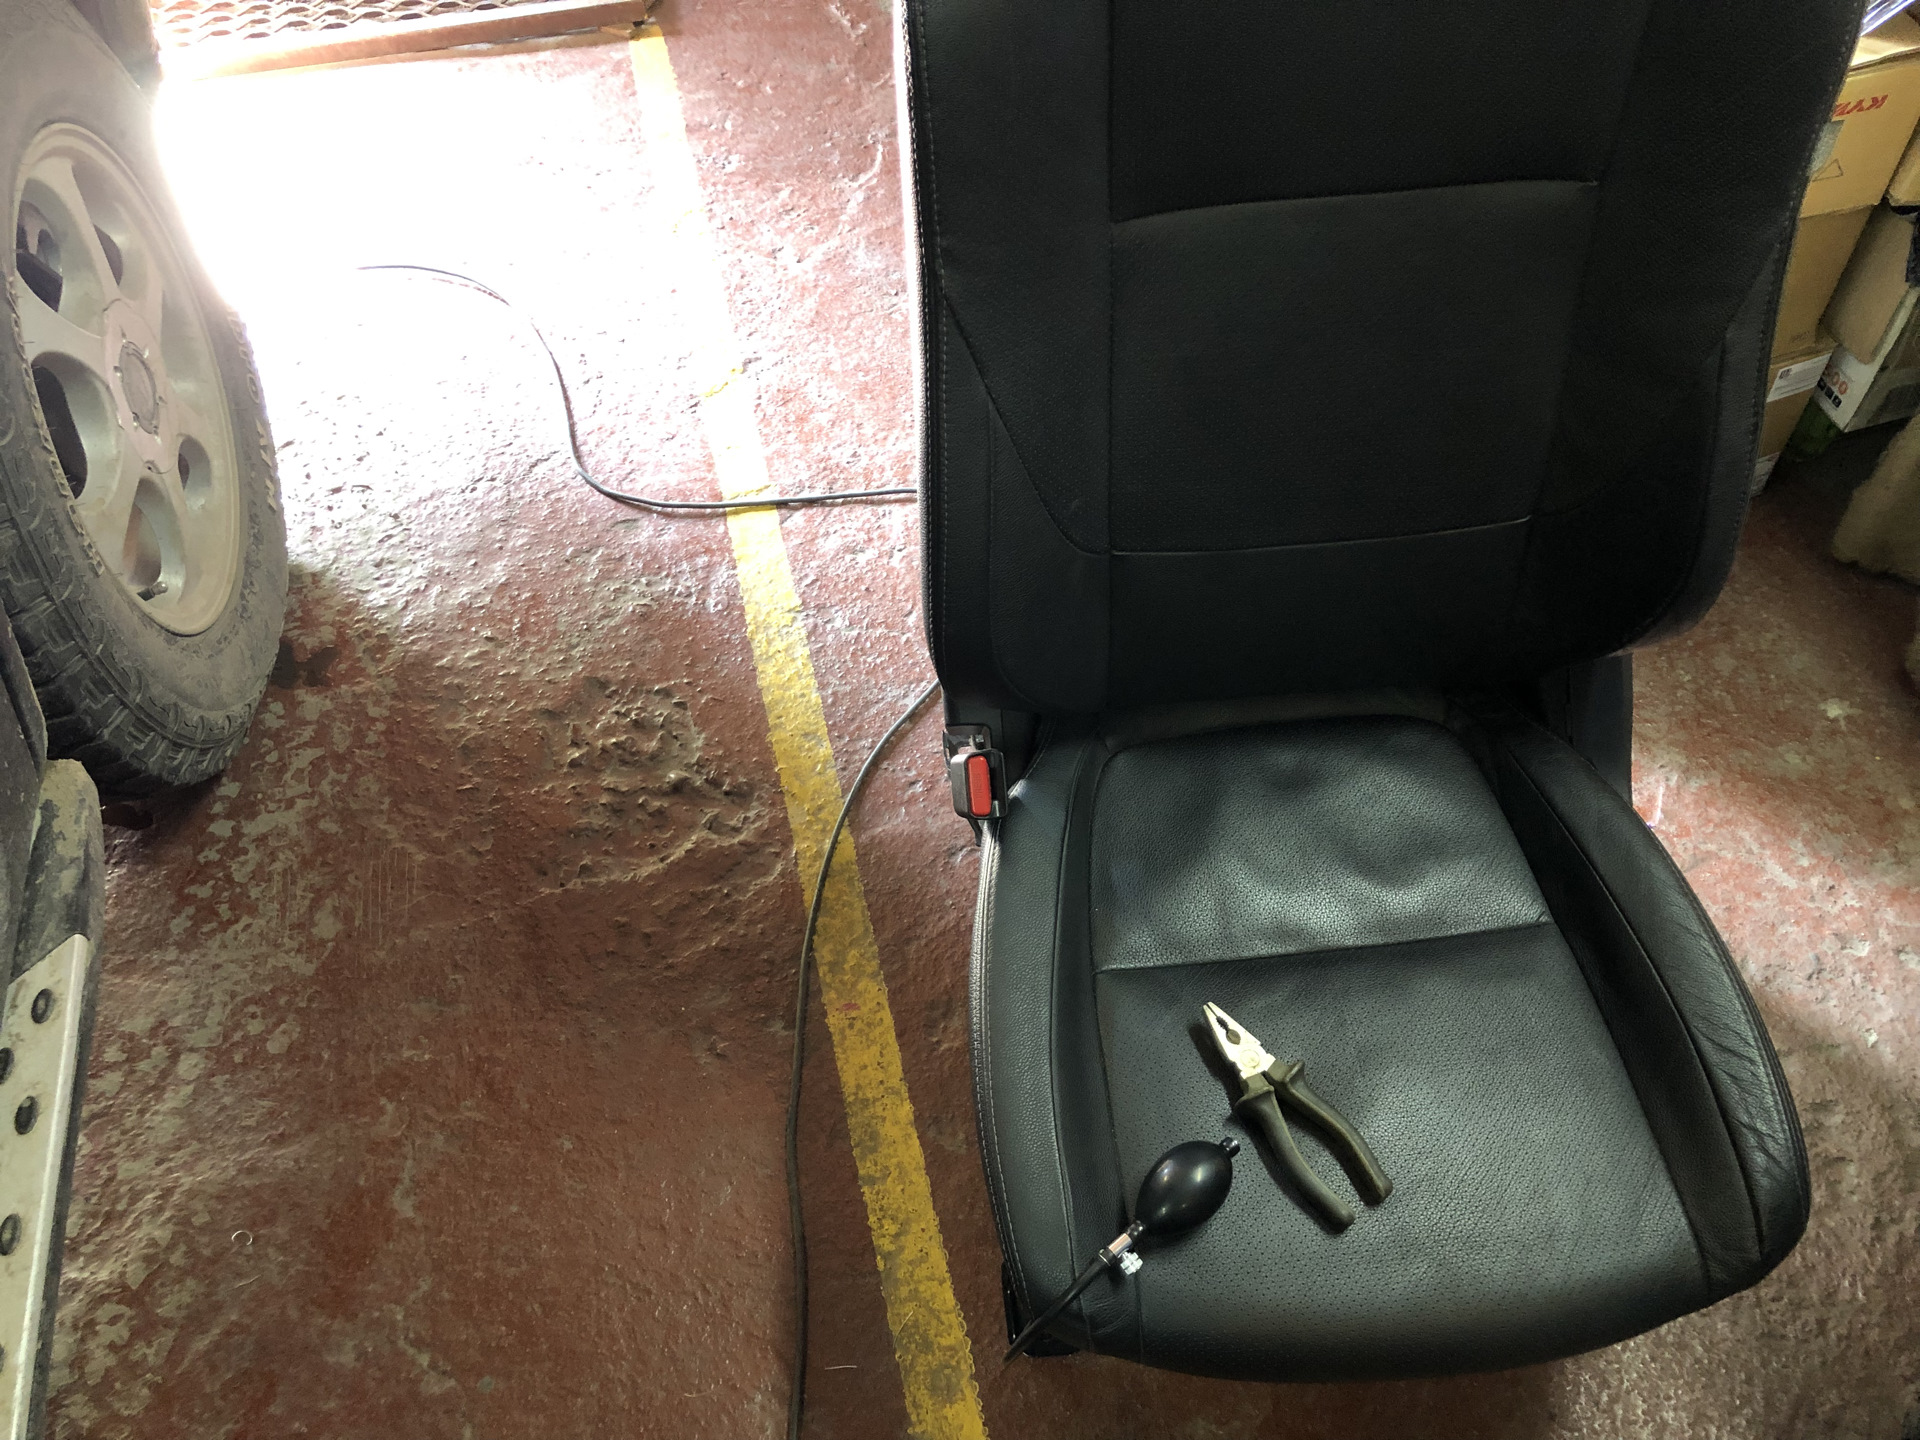 Скрип кресла. Поясничный упор Mazda 3bk. Ford 1732675 поясничный упор водит сидения. Водительское сидение Ровер 75. Поясничный упор под обшивку сиденья.